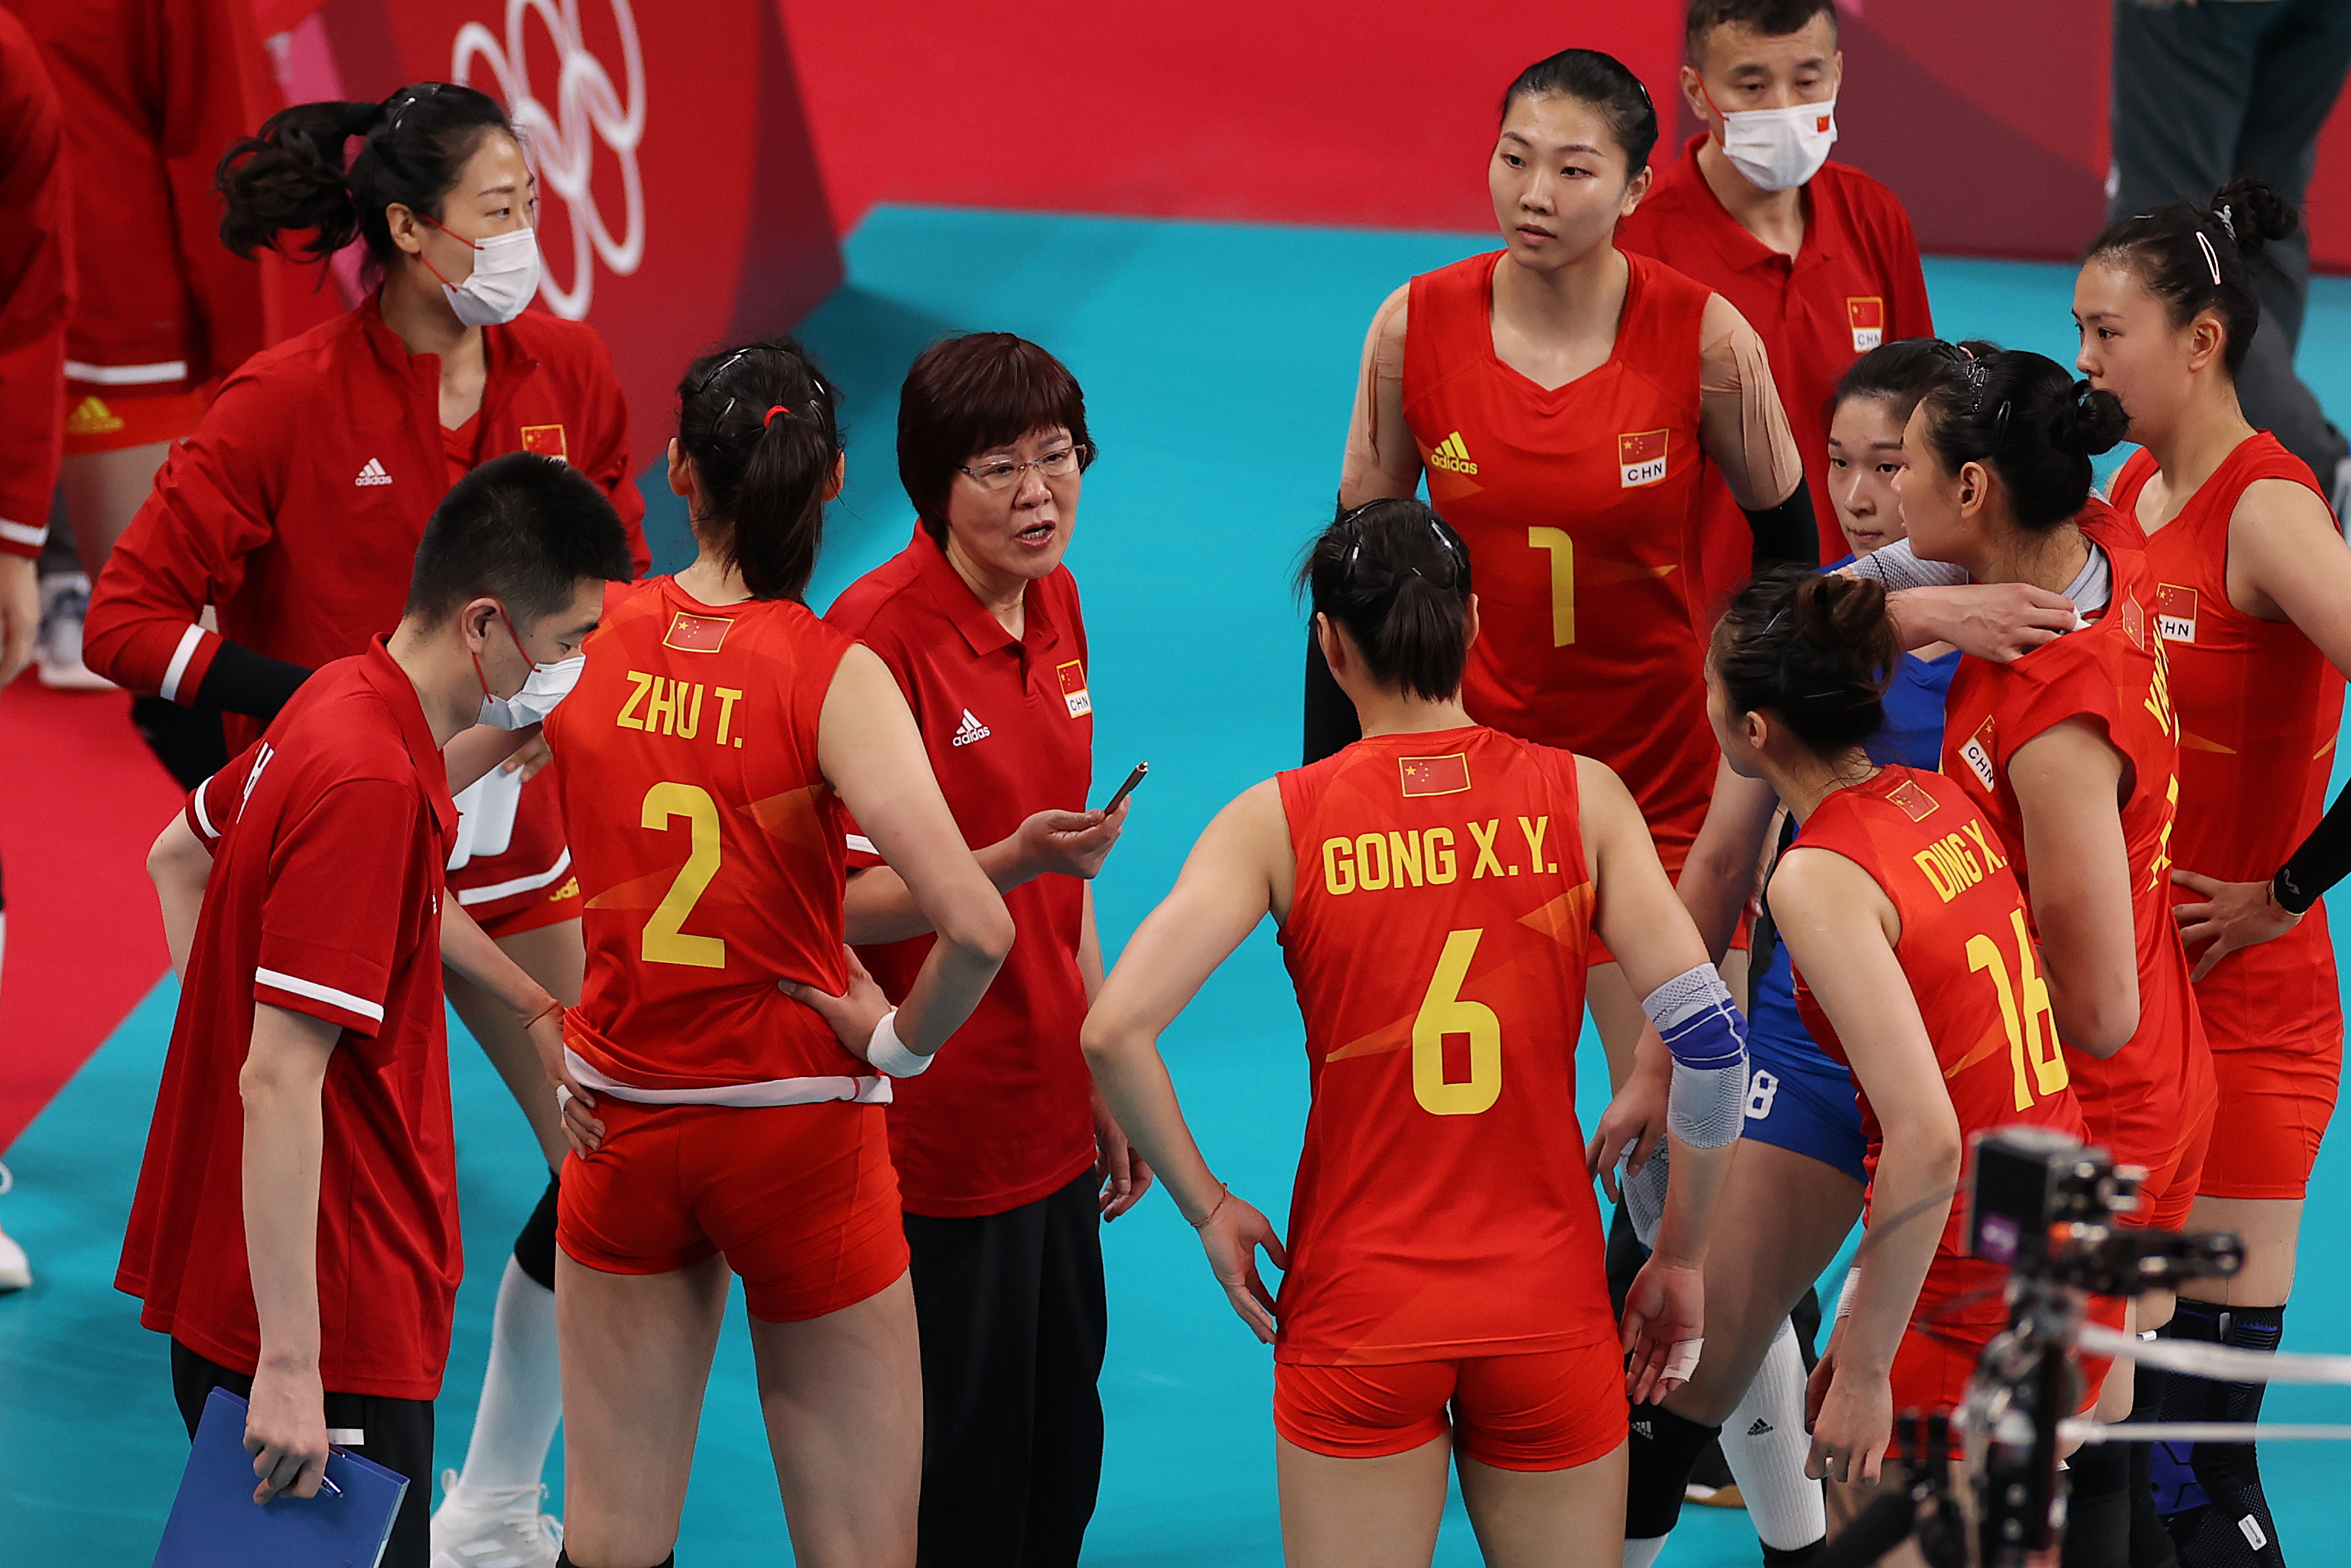 2019世界女排联赛中国对土耳其(朱婷4分，中国女排0-3土耳其！对手的“樱木花道”是谁？)